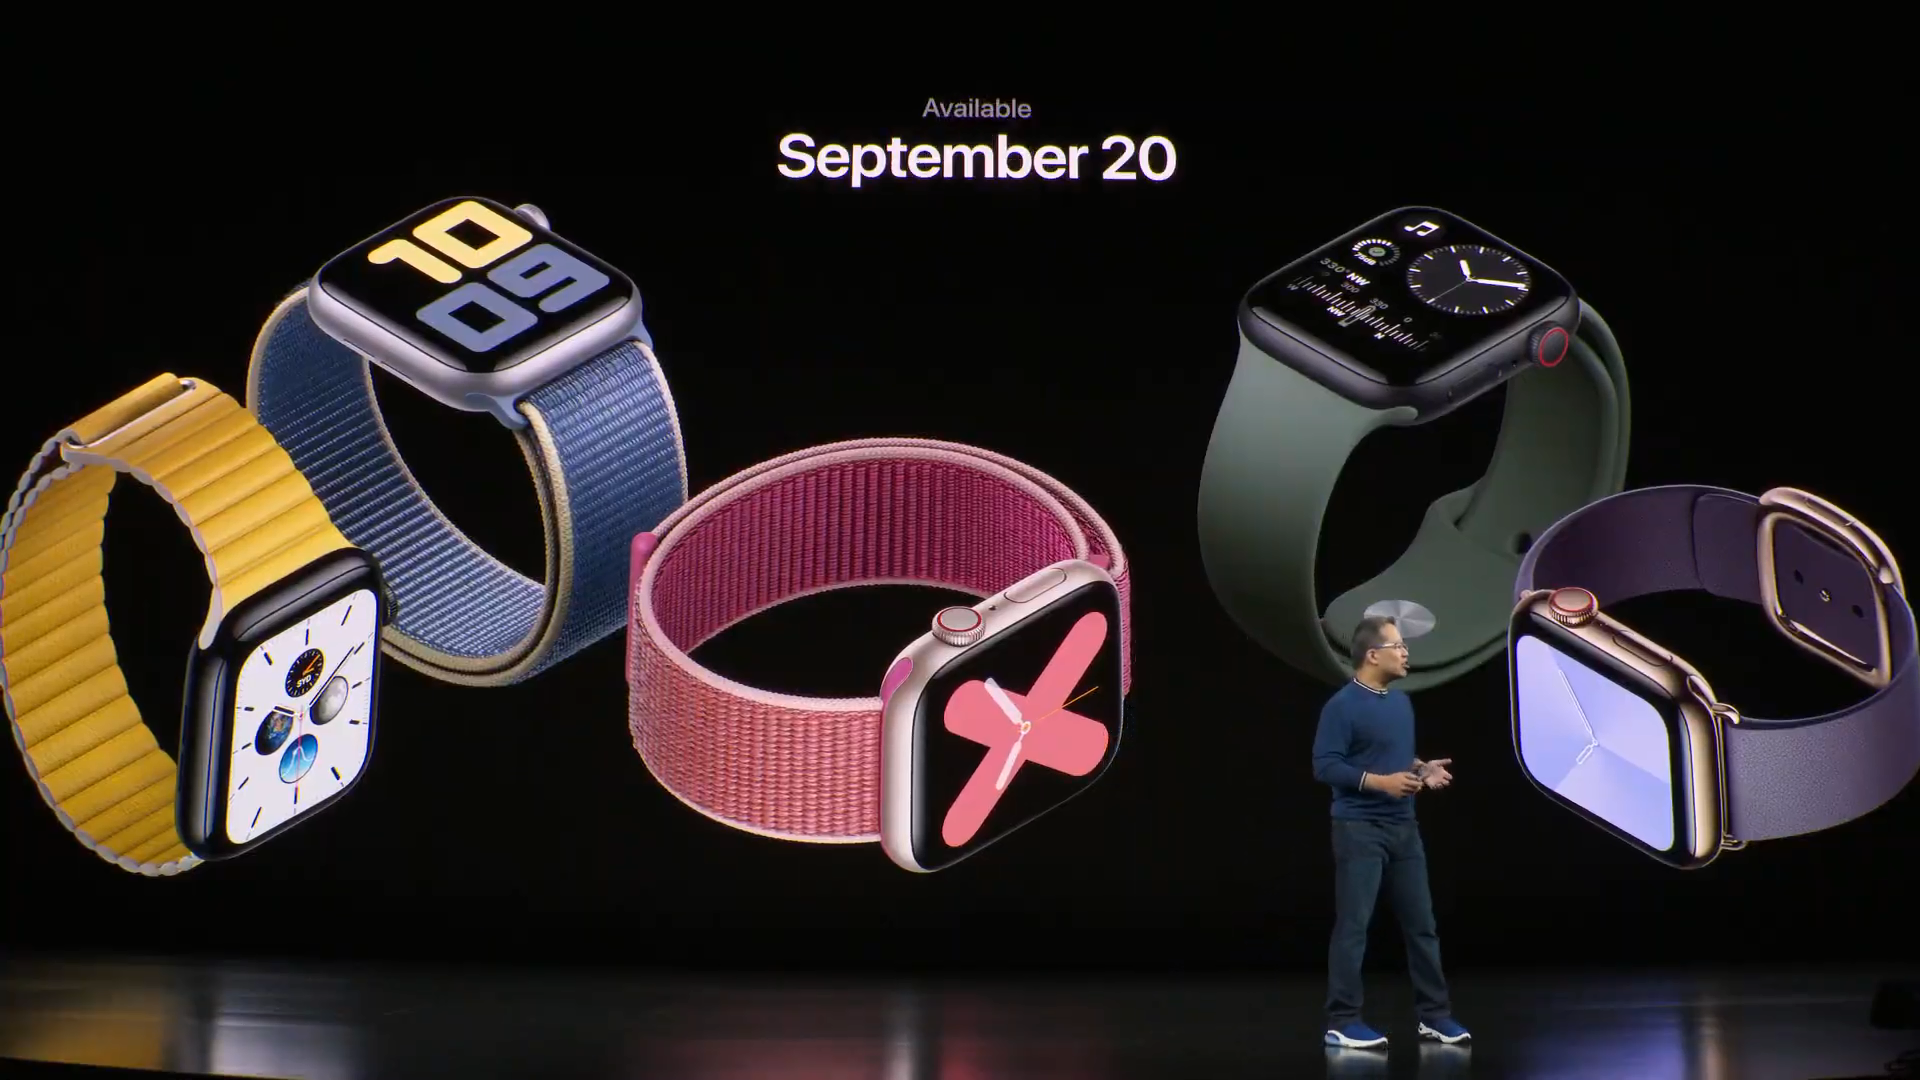 Apple memperkenalkan Apple Watch generasi 5